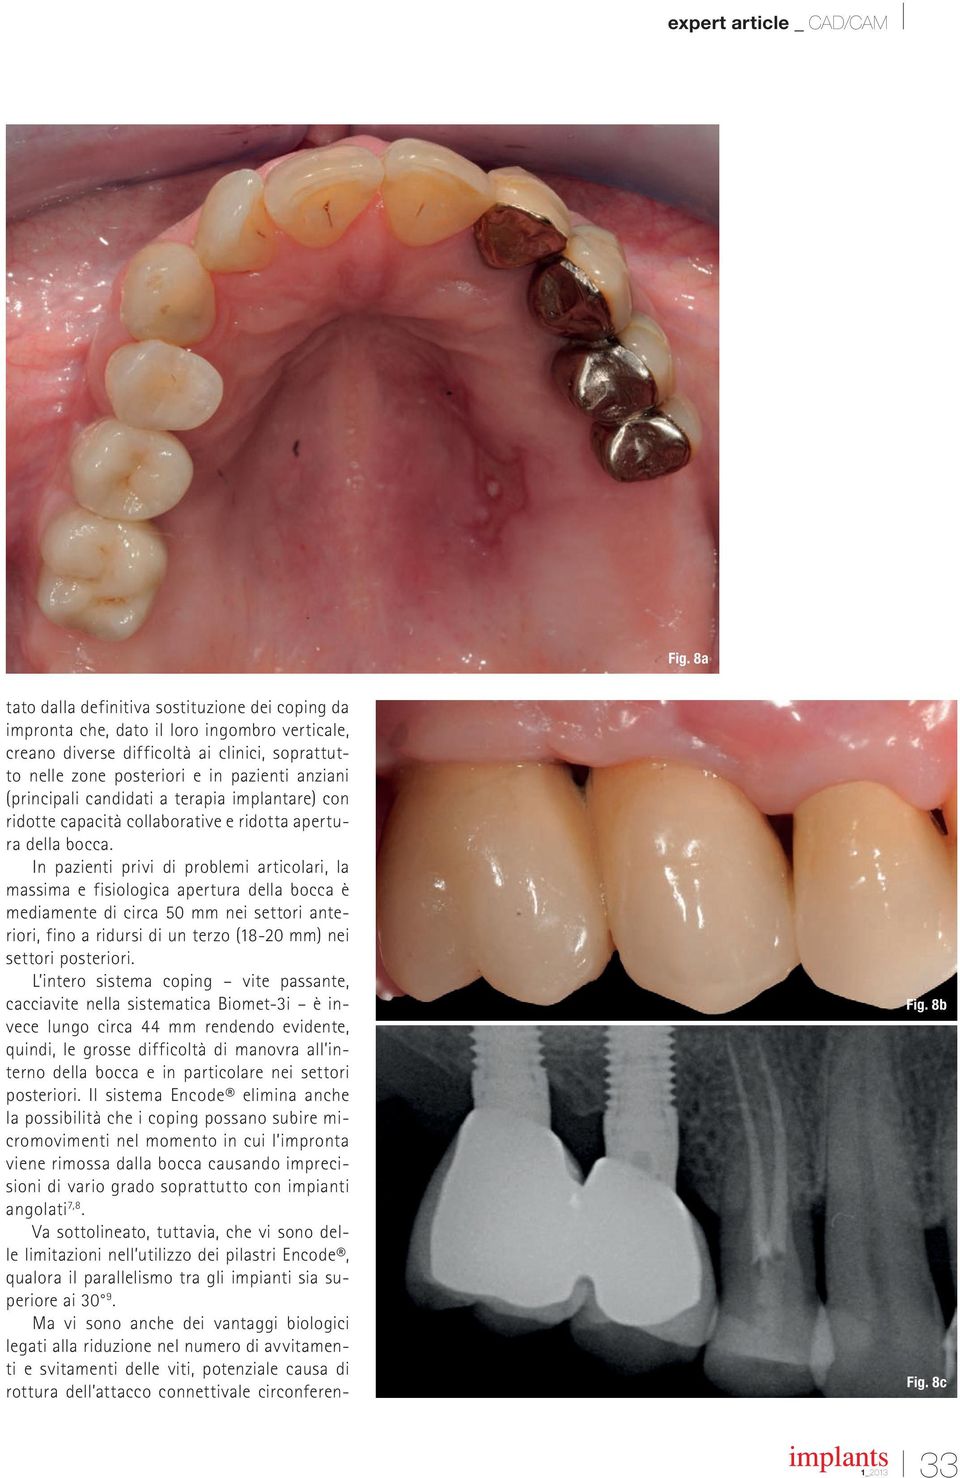 In pazienti privi di problemi articolari, la massima e fisiologica apertura della bocca è mediamente di circa 50 mm nei settori anteriori, fino a ridursi di un terzo (18-20 mm) nei settori posteriori.